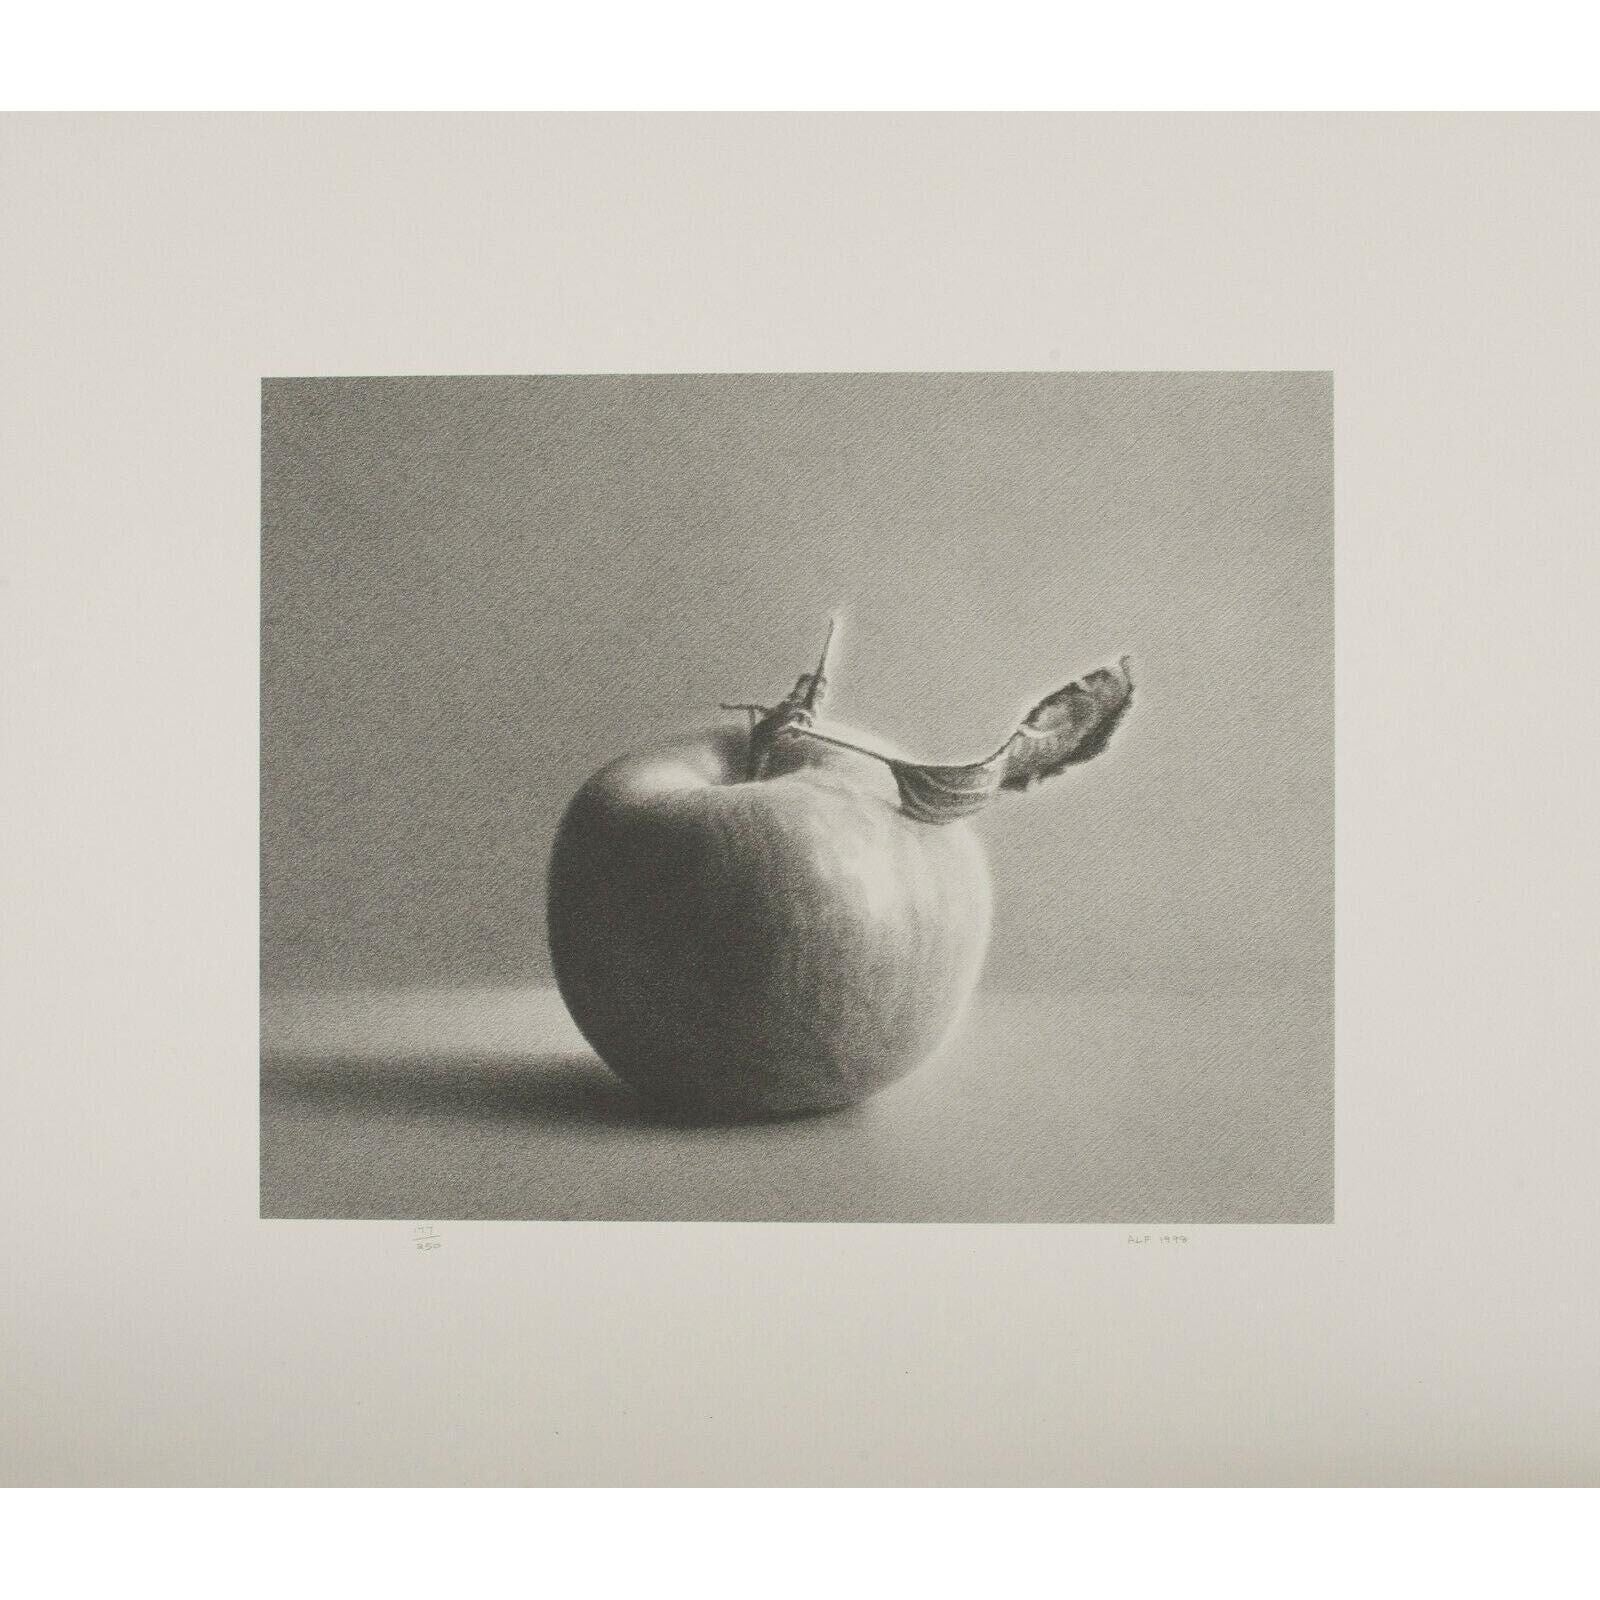 Martha Alf „ Apple“ Stillleben-Lithographie, limitierte Auflage von 250 Exemplaren, signiert